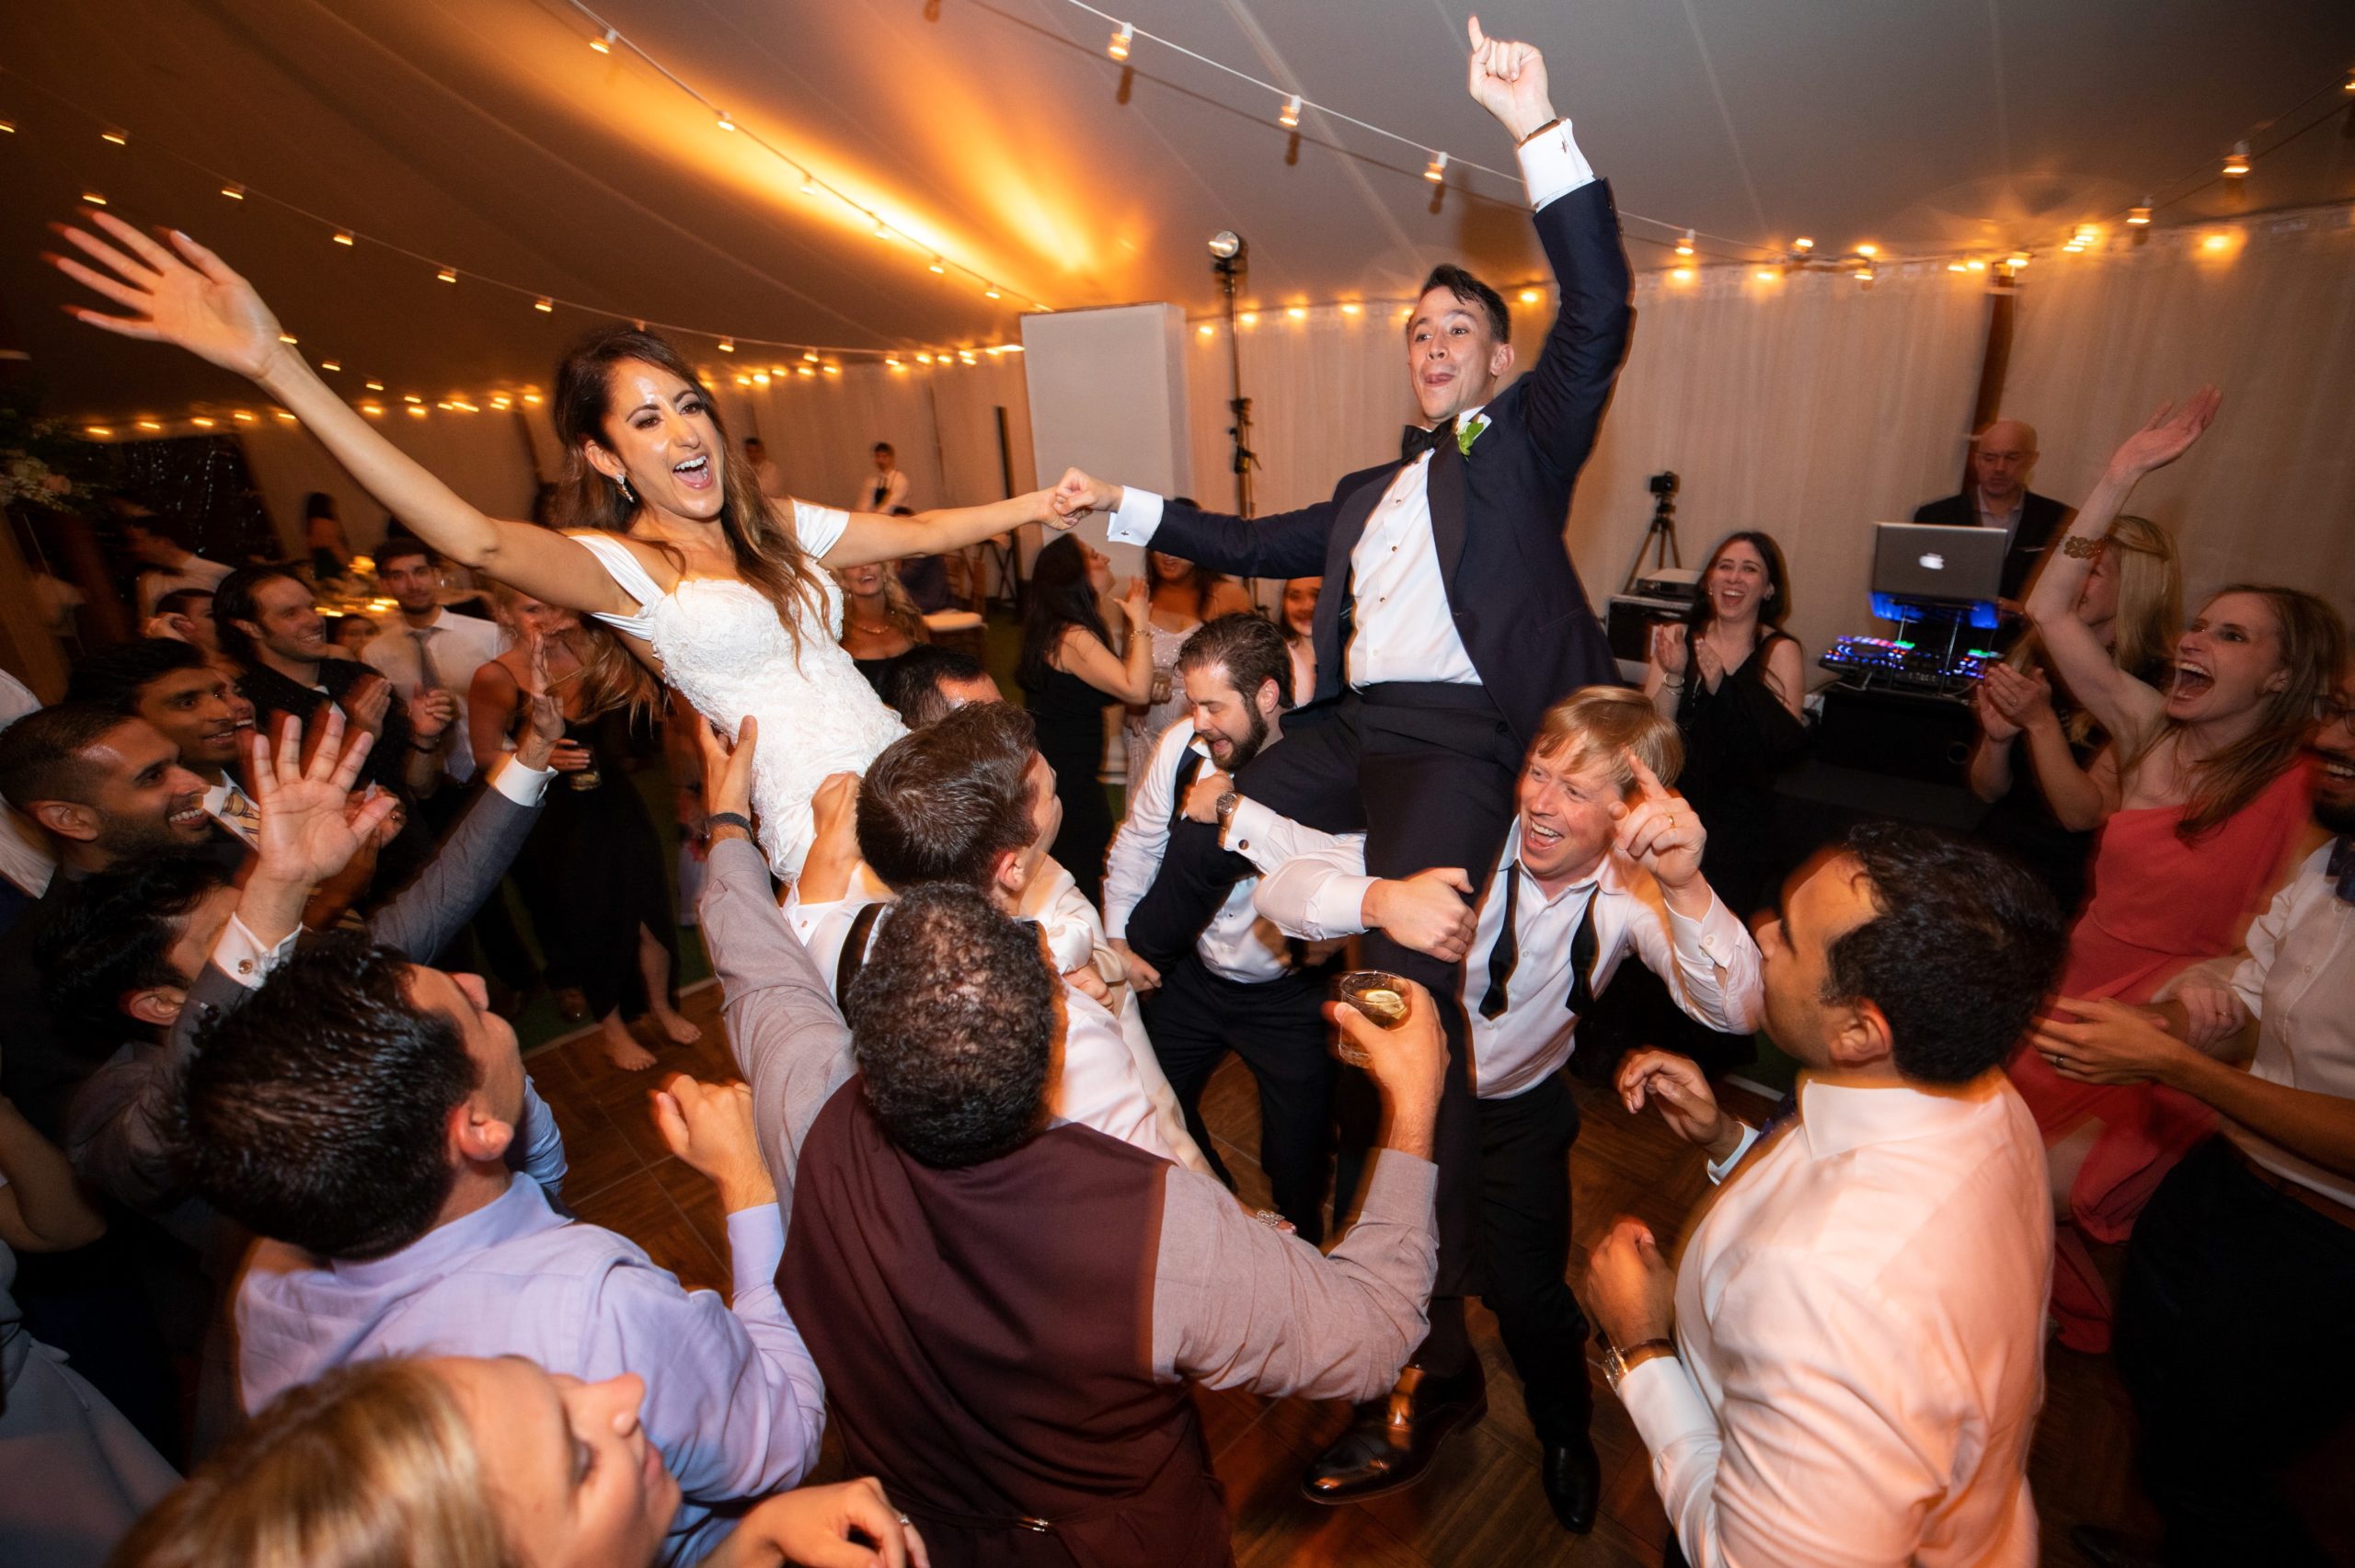 Best Wedding Dancing Photos